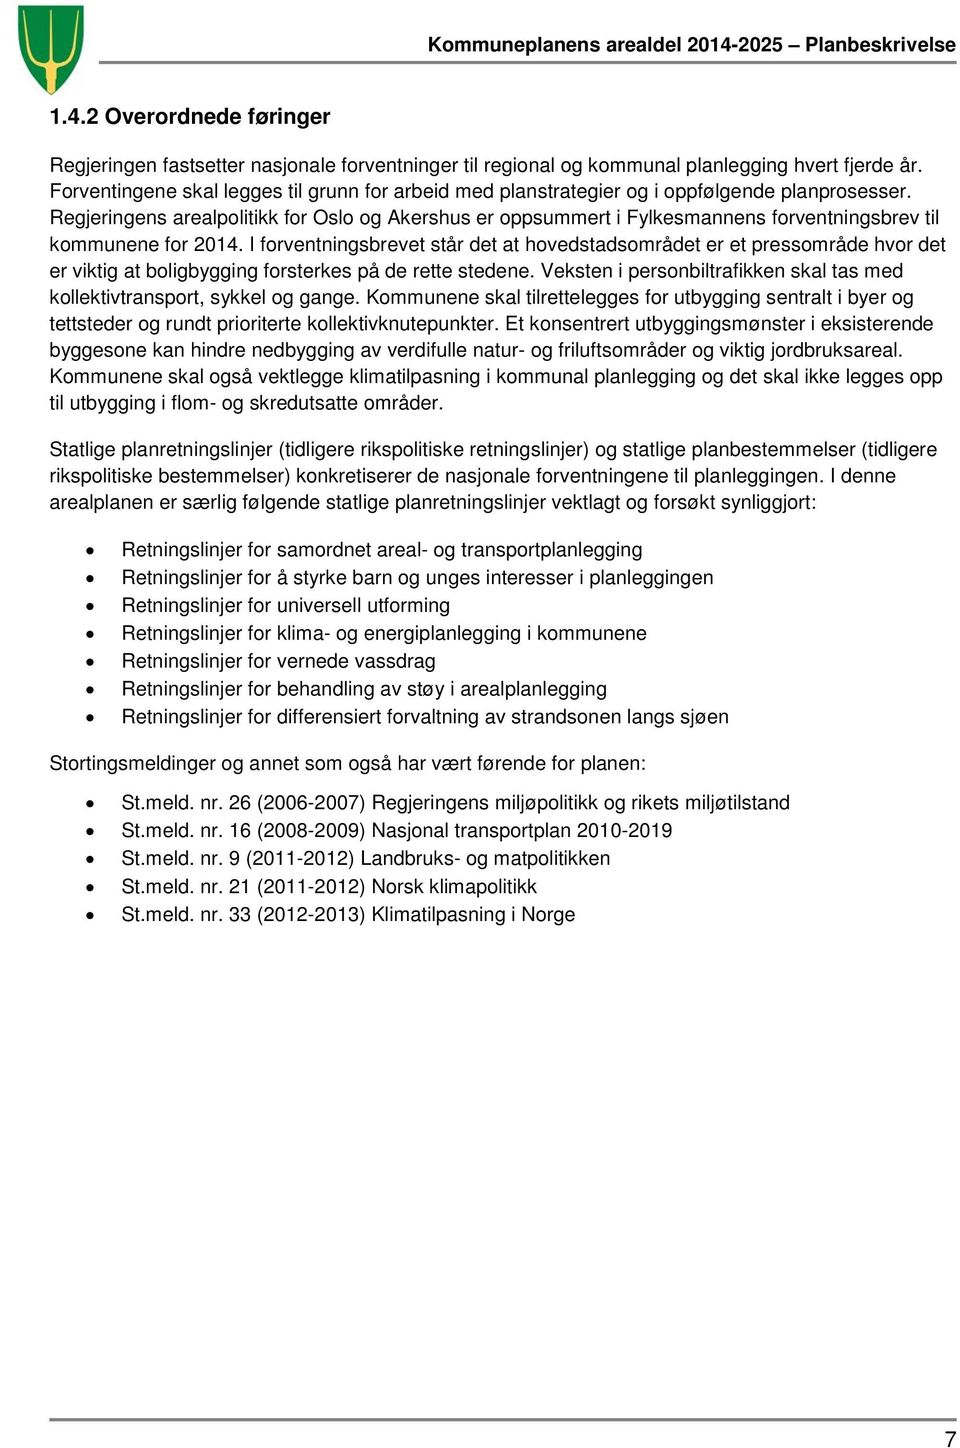 Regjeringens arealpolitikk for Oslo og Akershus er oppsummert i Fylkesmannens forventningsbrev til kommunene for 2014.